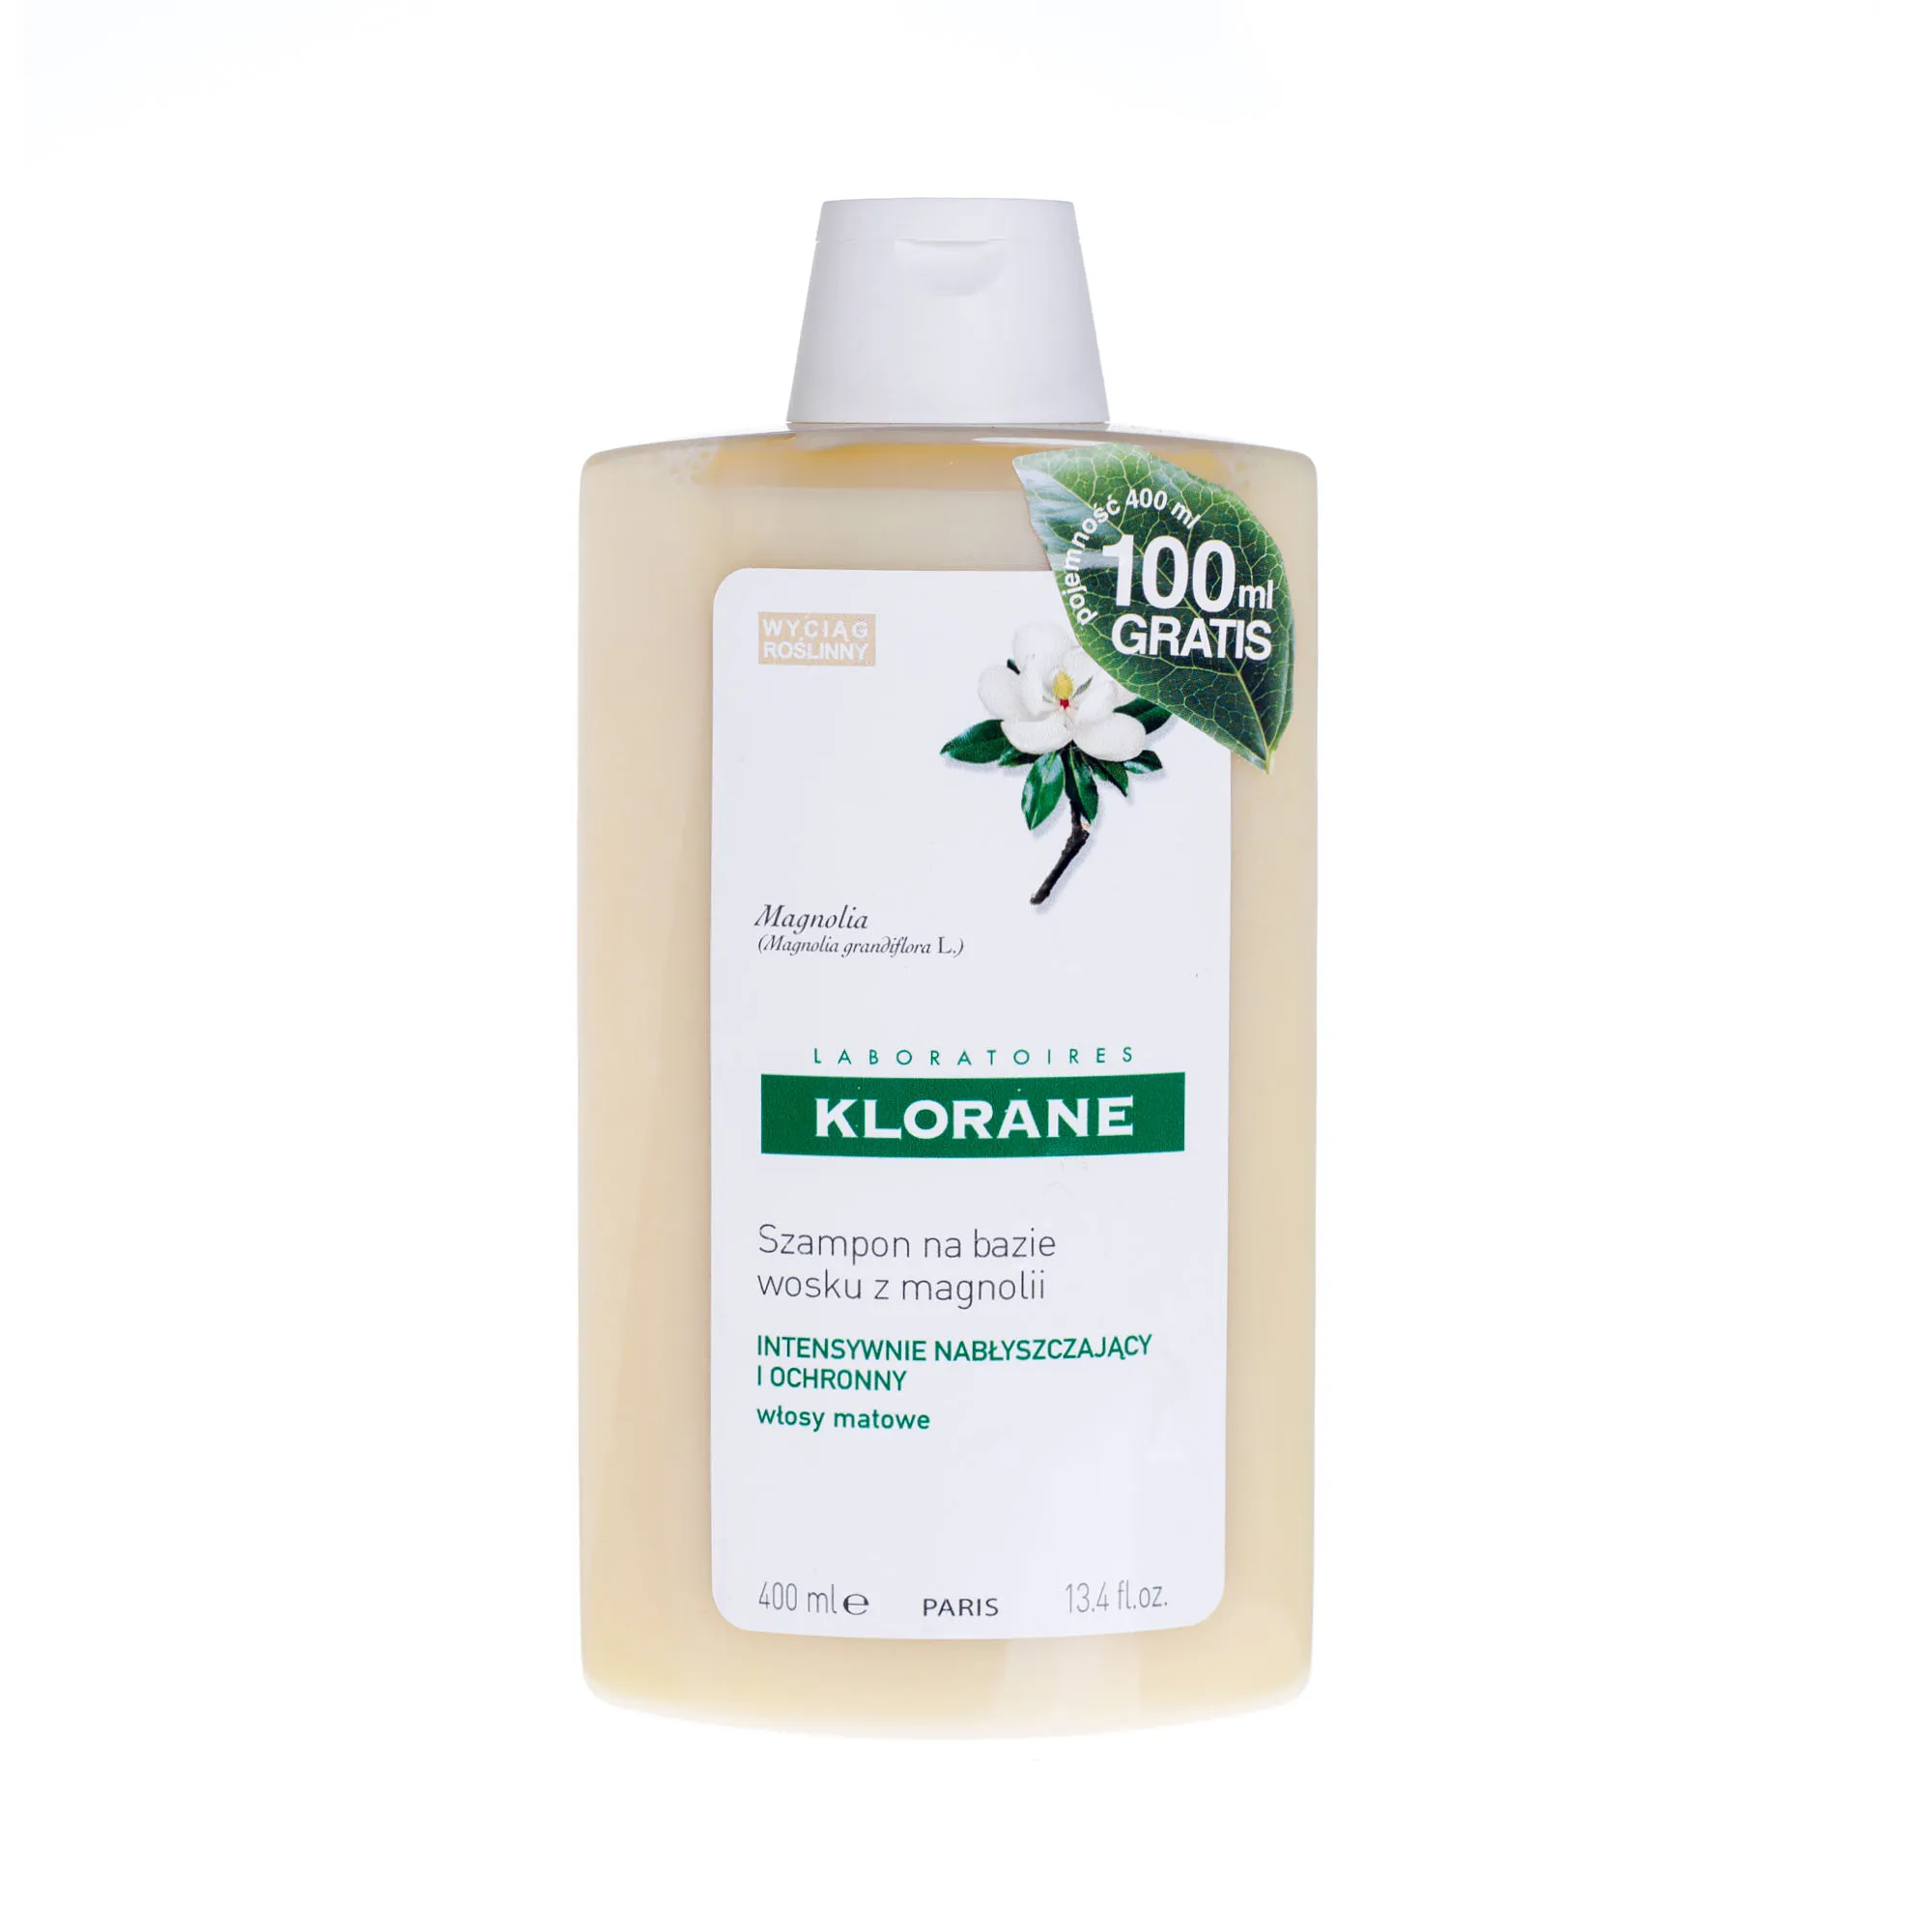 klorane szampon na bazie wosku z magnolii 400ml